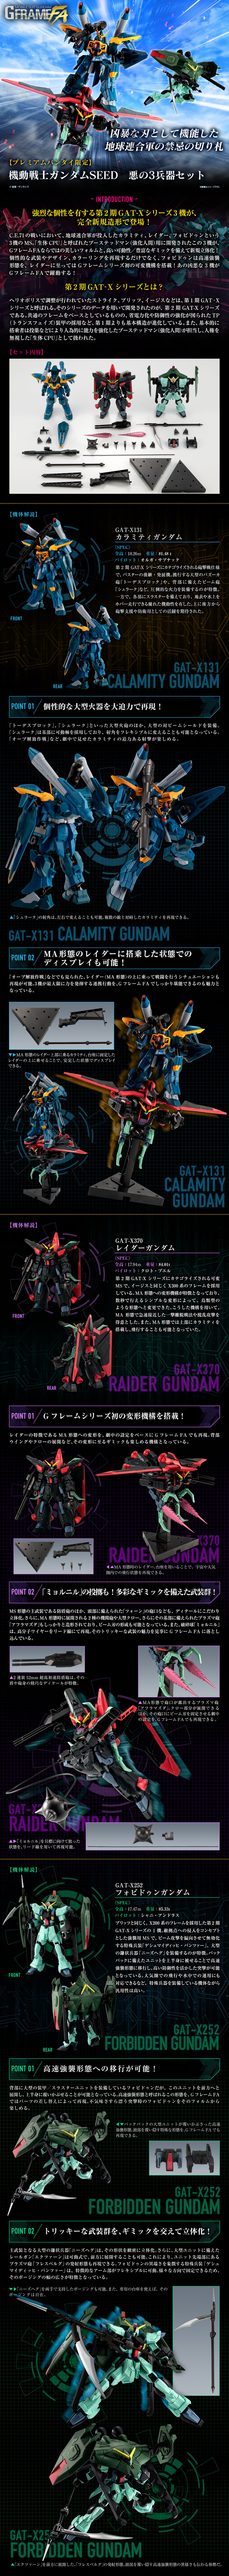 Mobile Suit Gundam G Frame Full Armor GAT-X131 Calamity Gundam + GAT-X252 Forbidden Gundam + GAT-X370 Raider Gundam